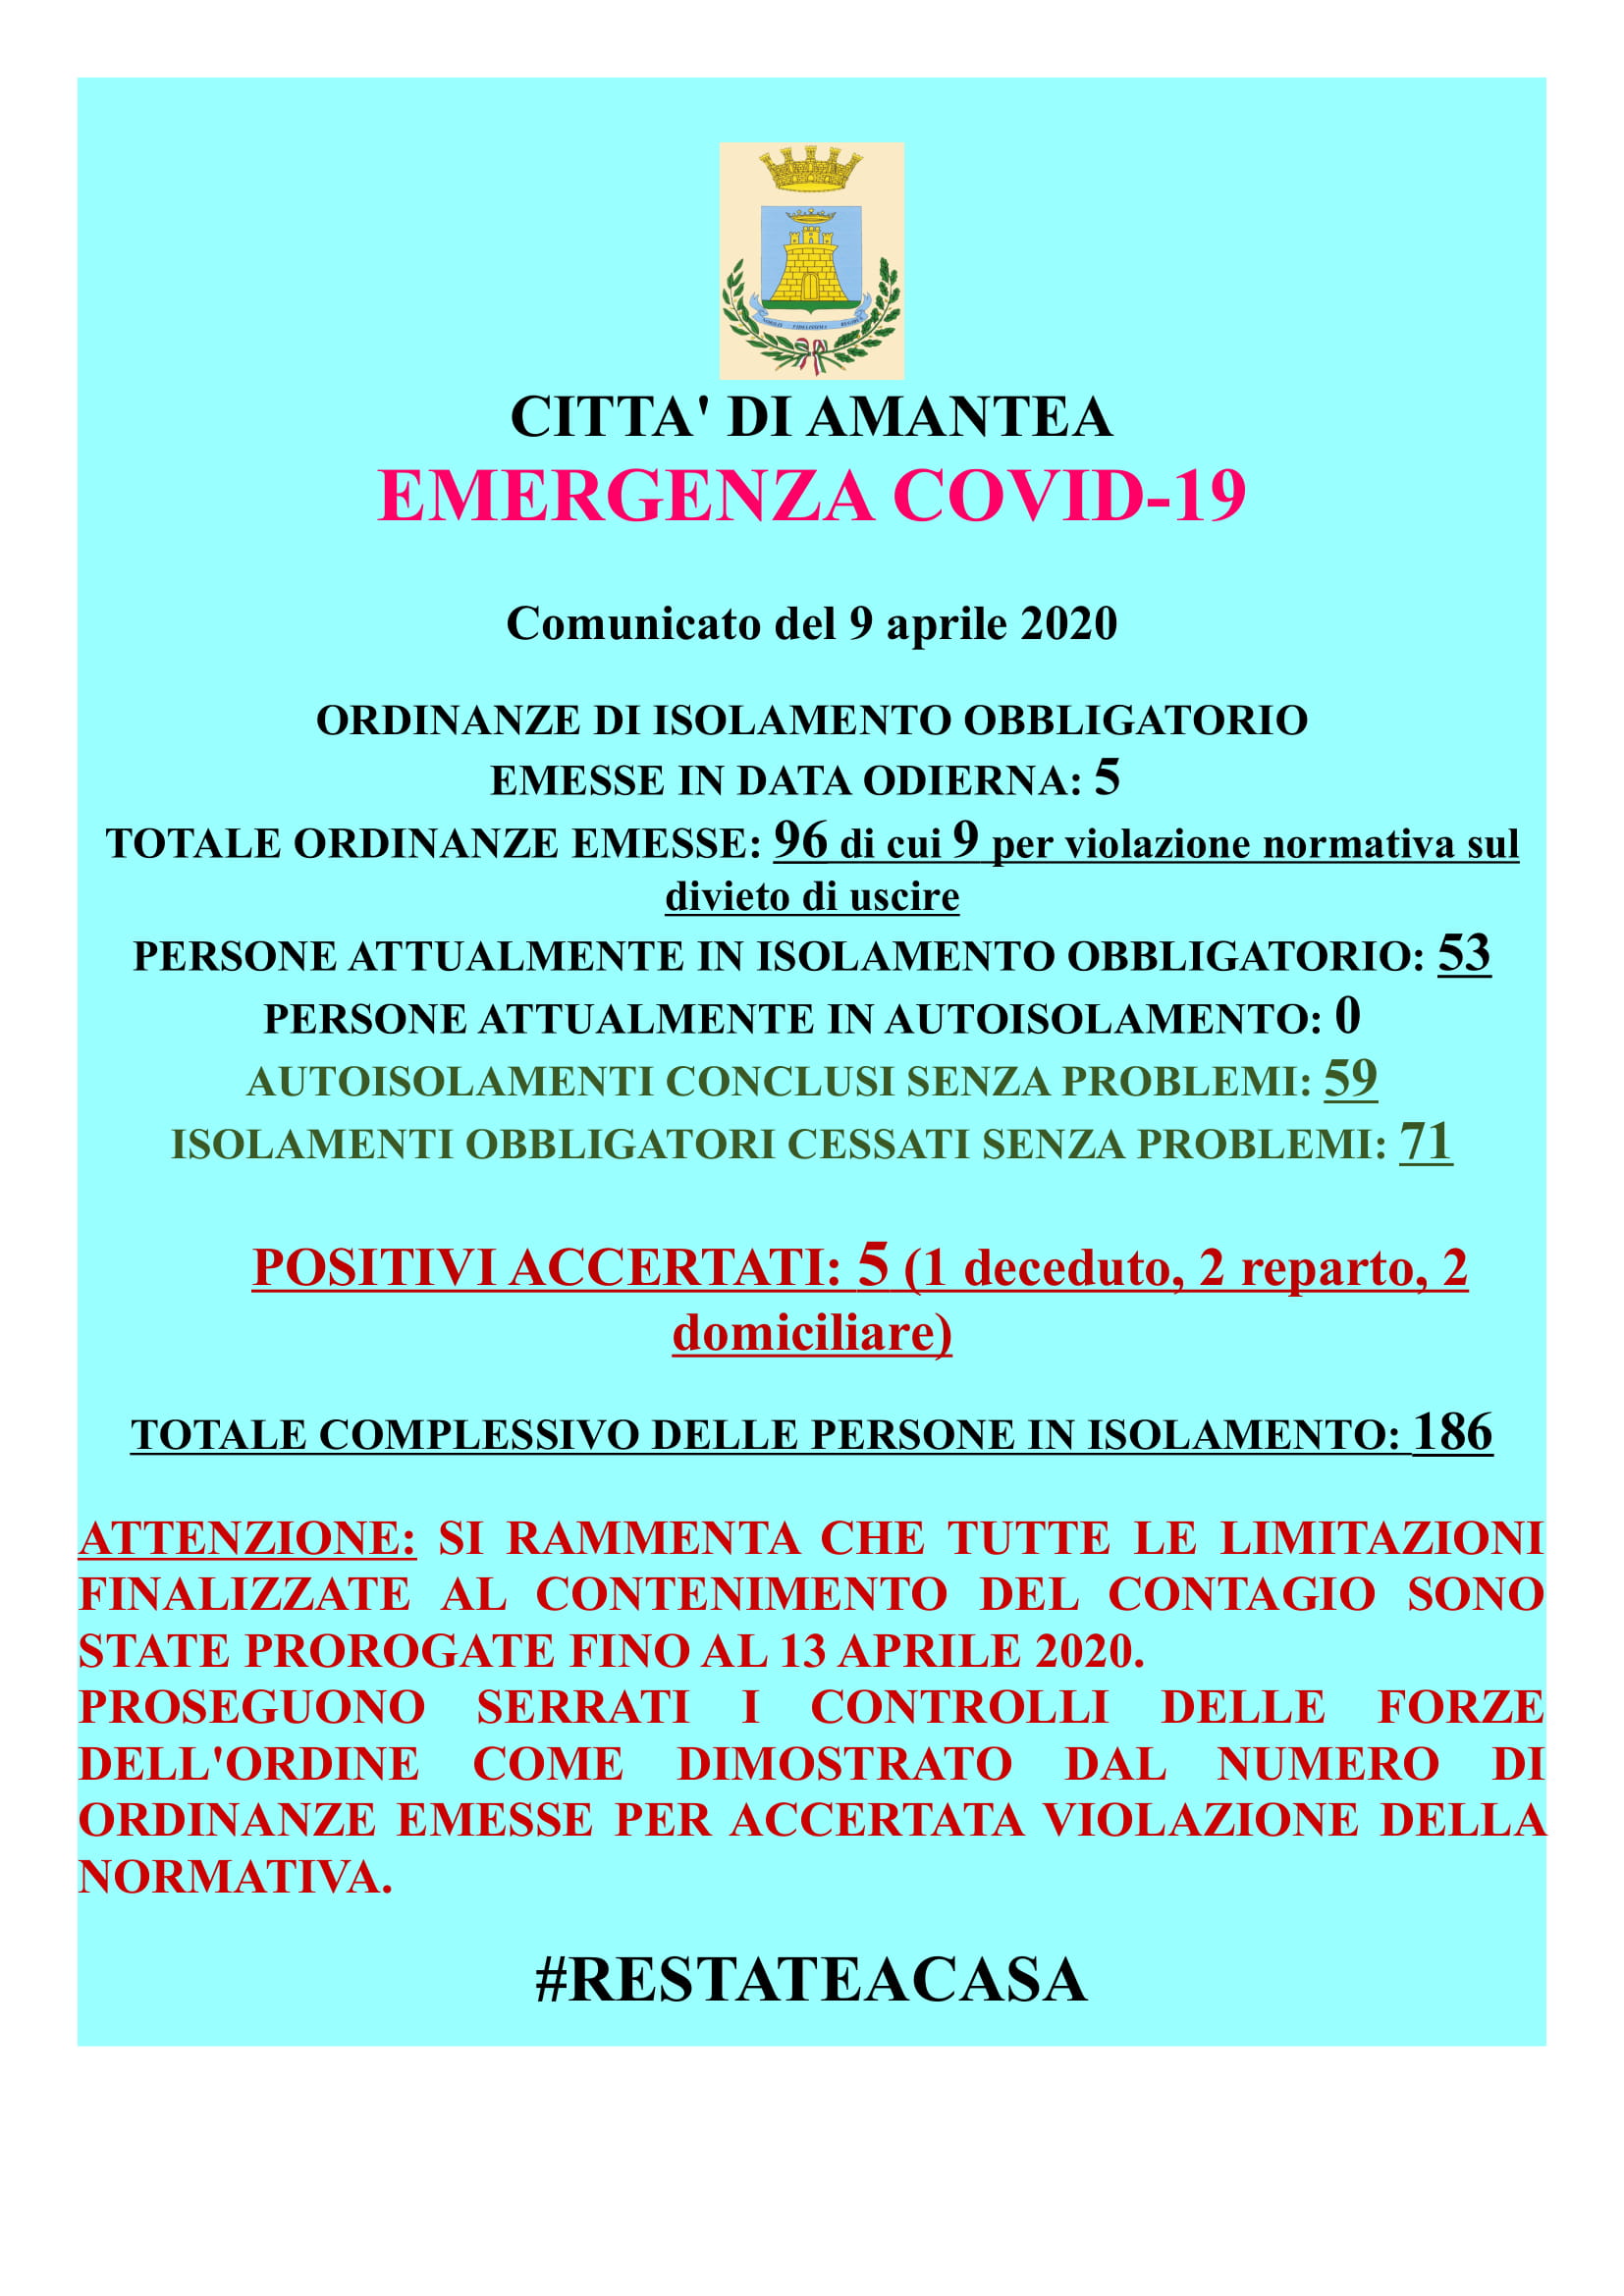 EMERGENZA COVID-19 Comunicato del 09 Aprile 2020